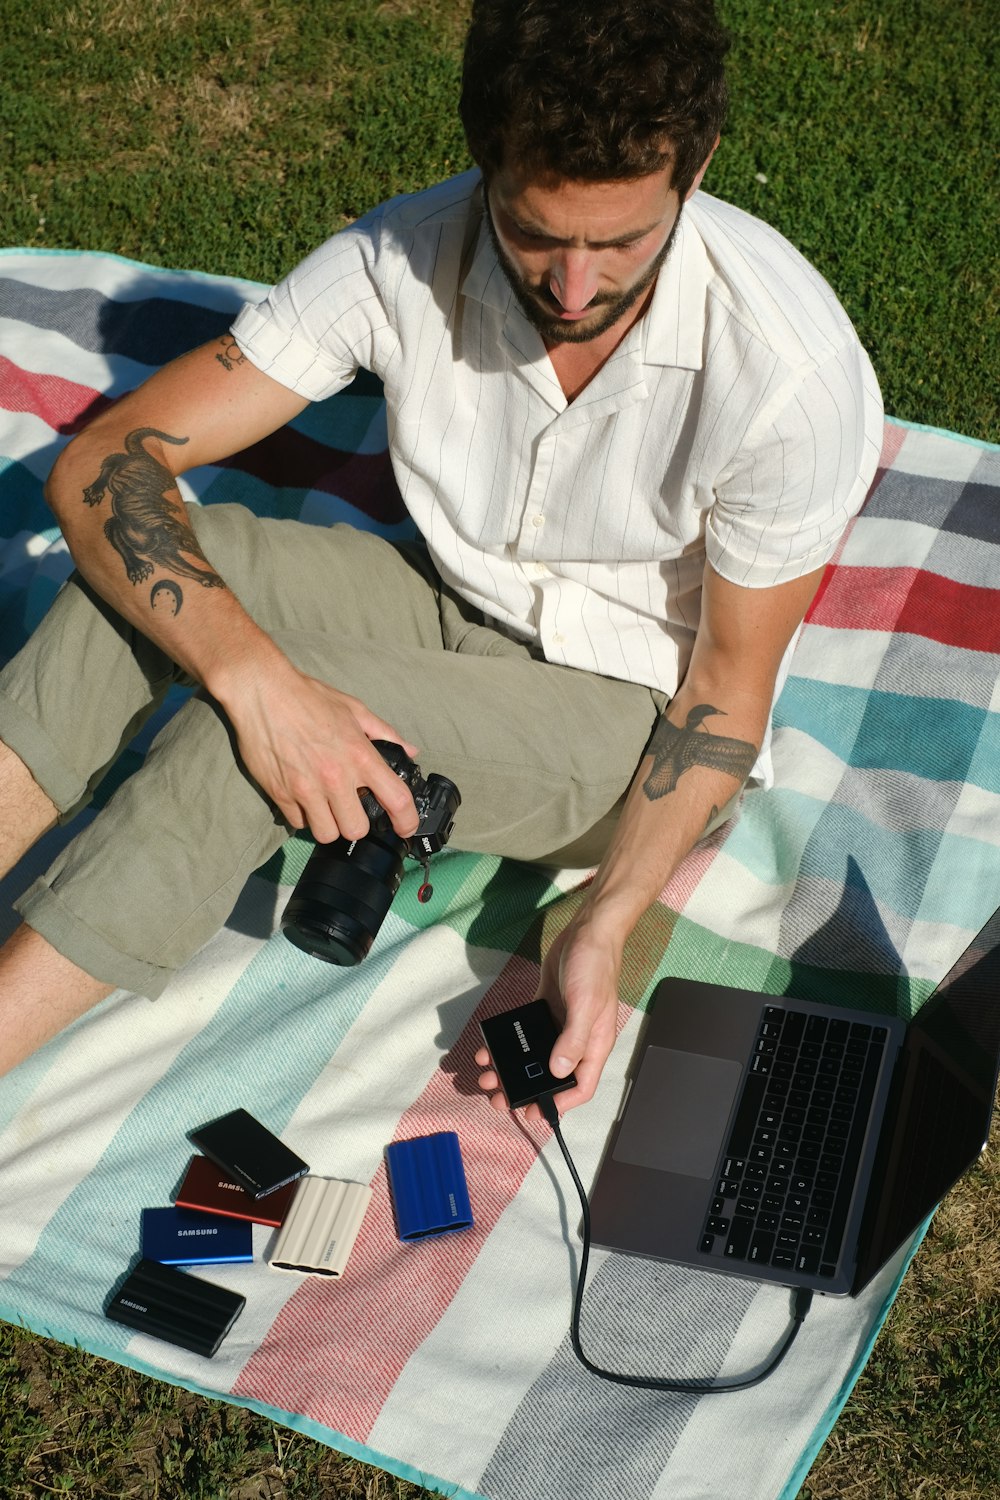 노트북과 카메라를 들고 잔디에 앉아 있는 남자